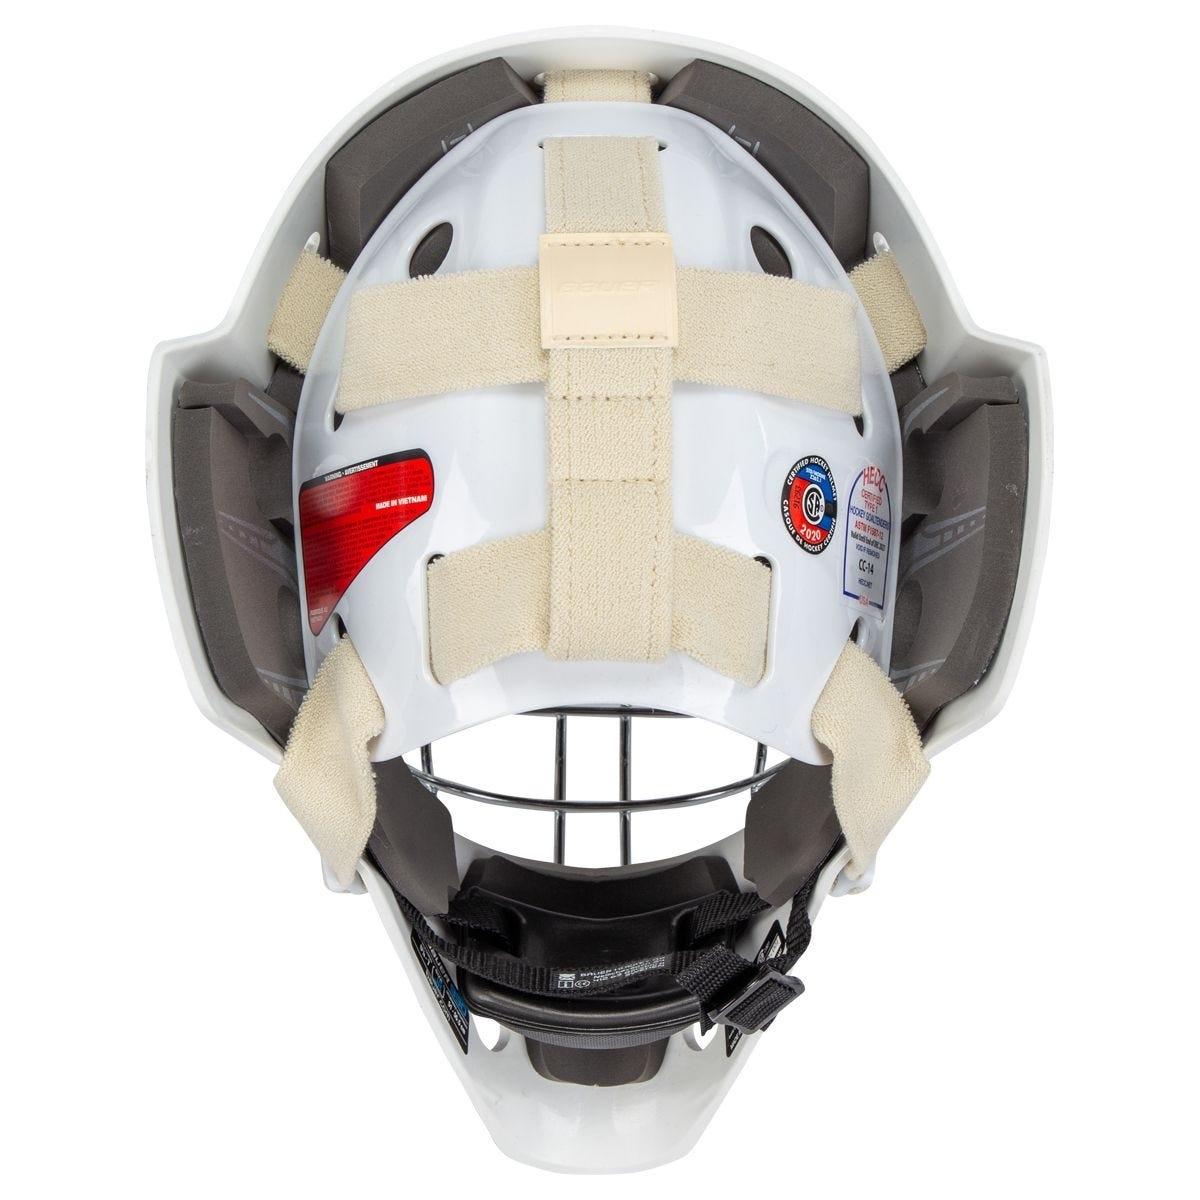 Bauer 930 Jr. Certified Goalie Maskproduct zoom image #5